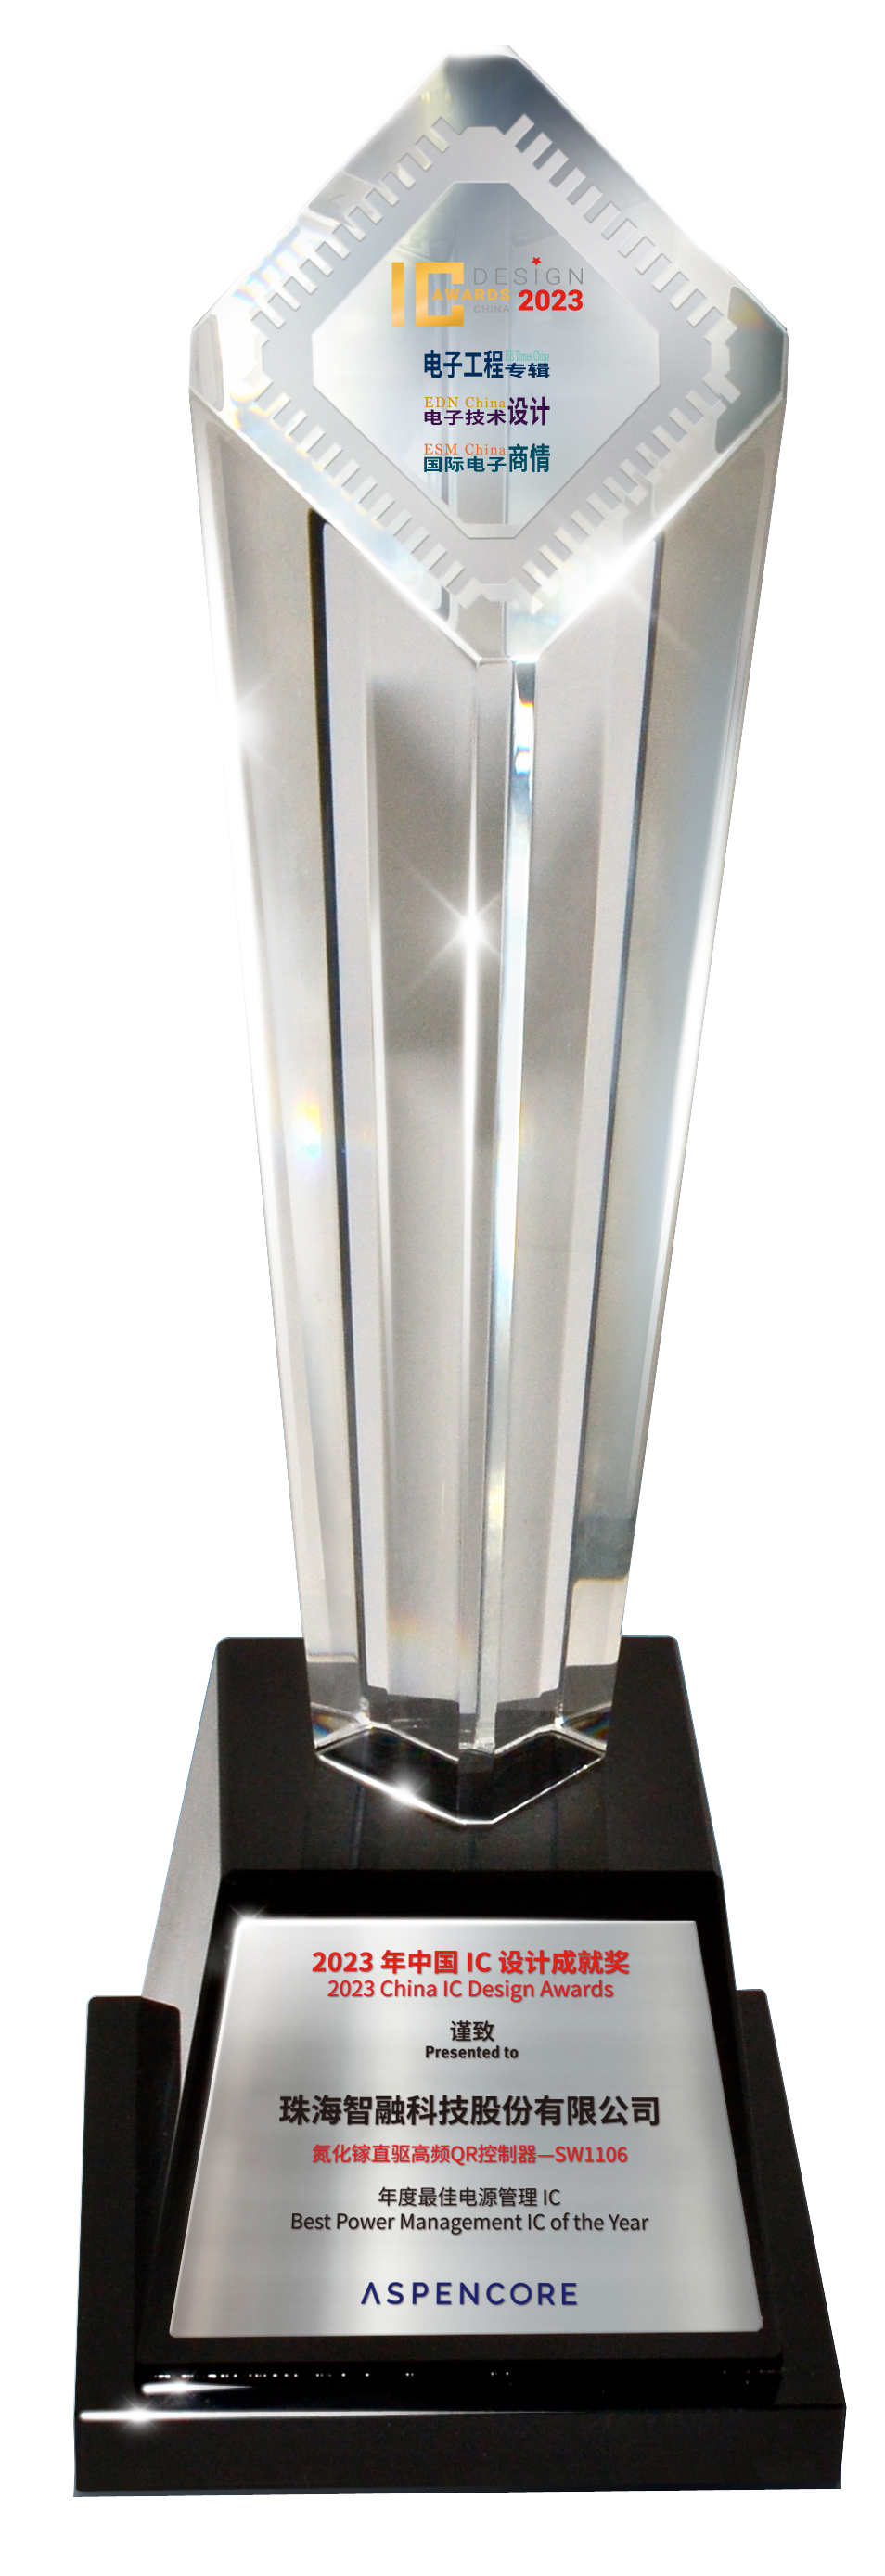 中国 IC设计成就奖之年度最佳电源管理 IC